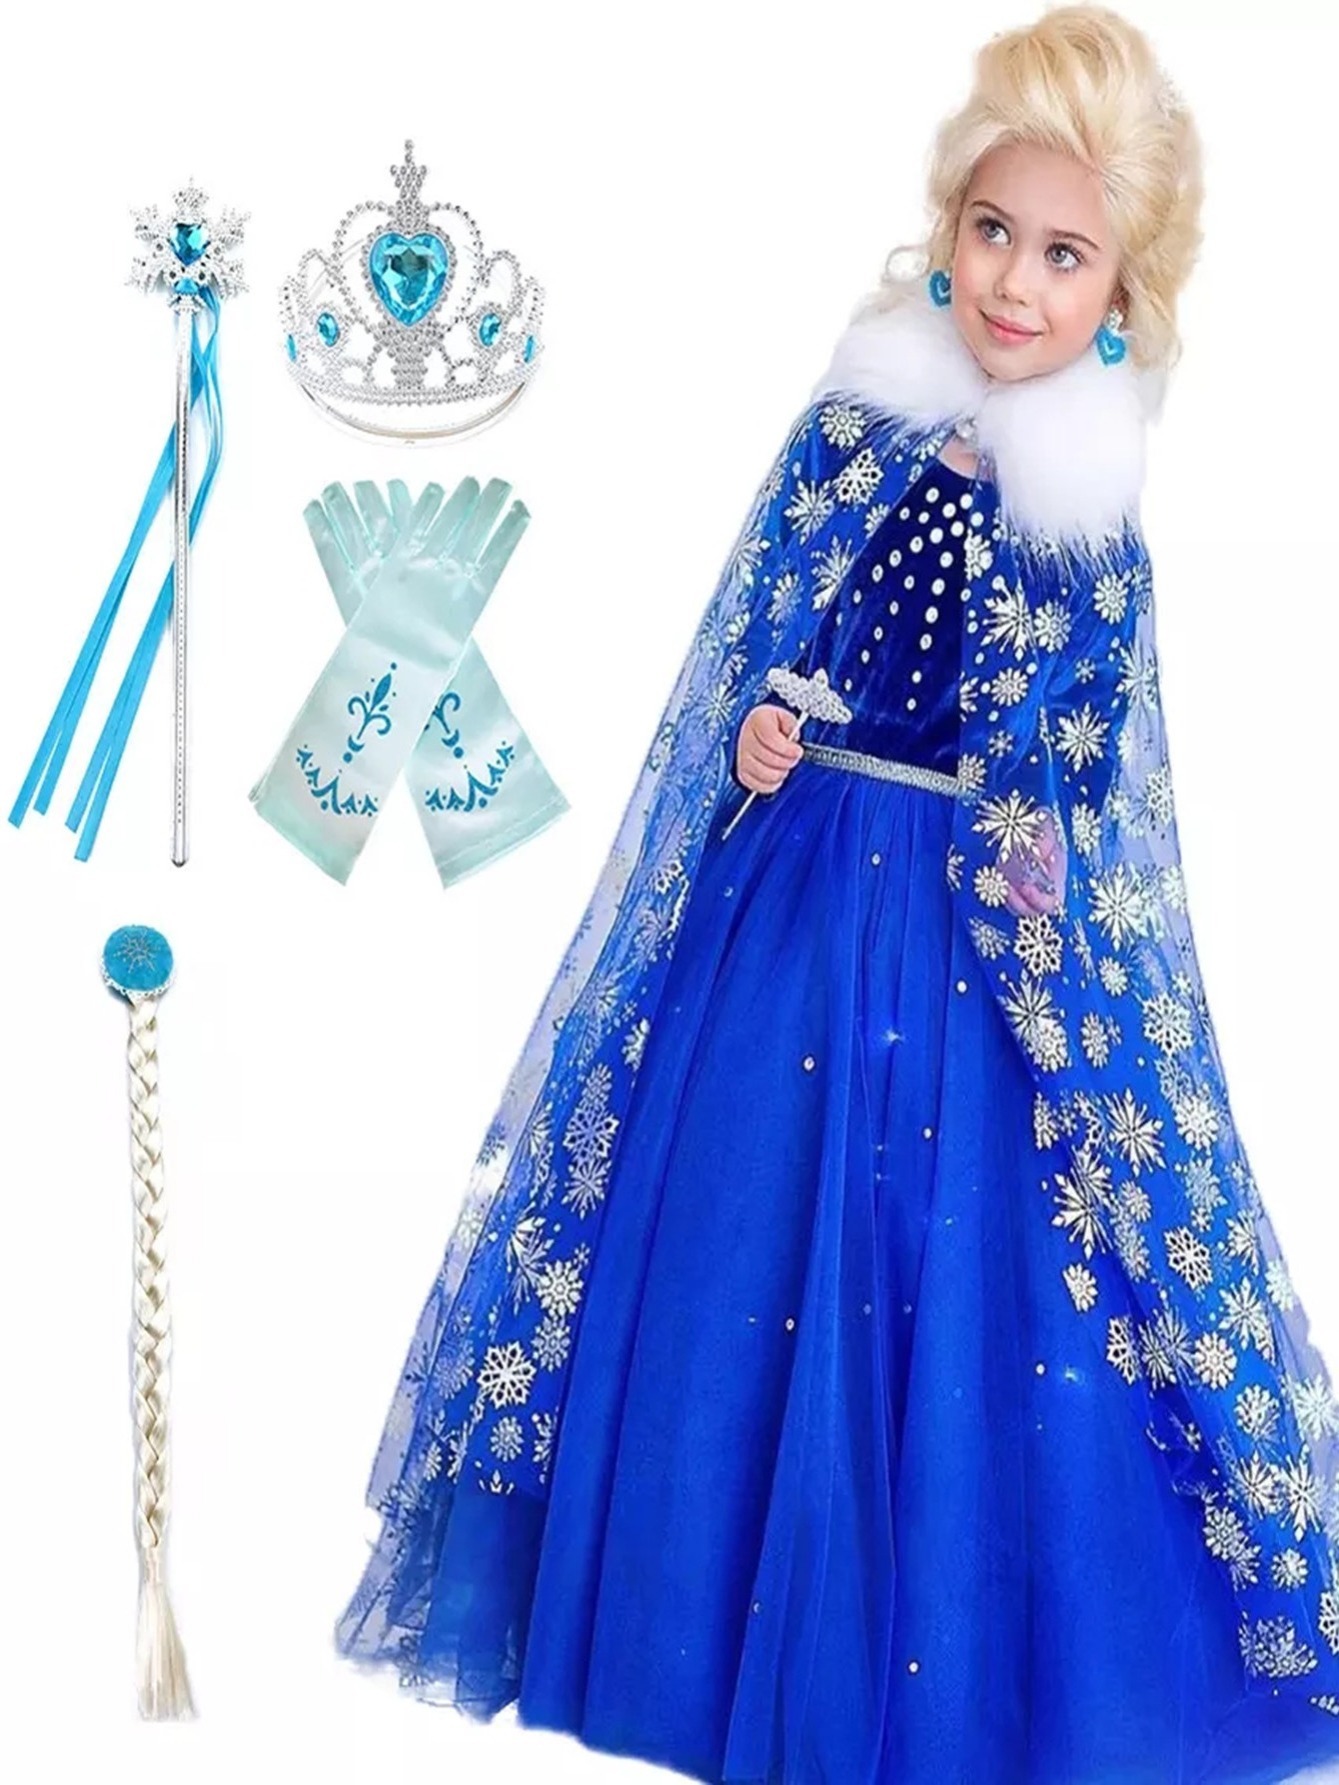 Niumowang Accessori per Costume da Principessa, Accessori Principessa, Set  Gioielli Bambina, con corona, orecchini, spilla e guanti, per la